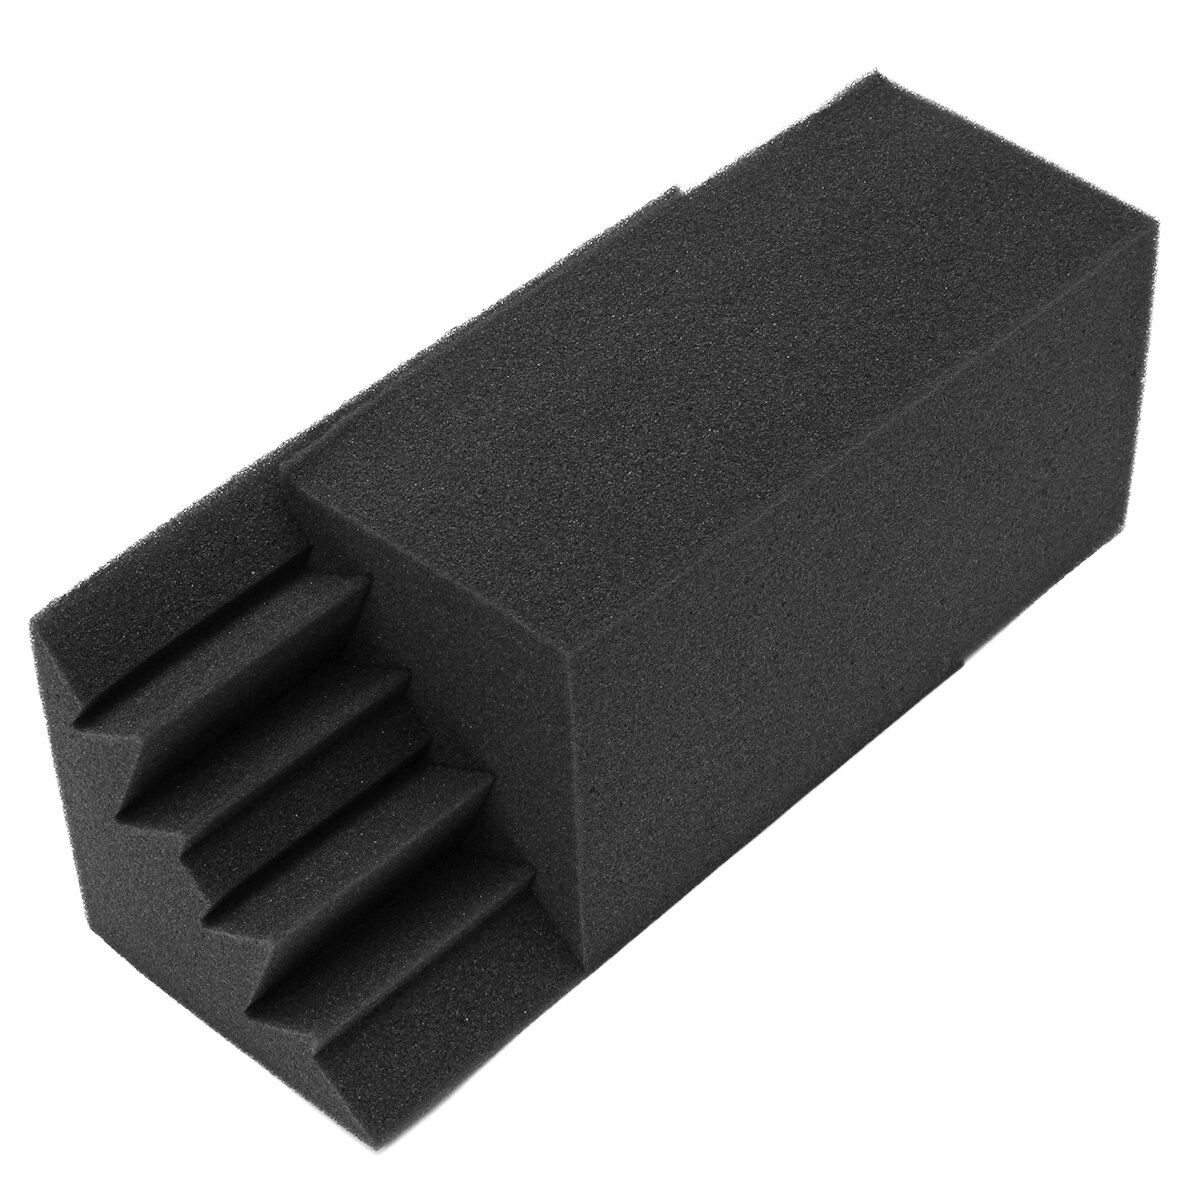 8Pcs 12x12x24cm Studio Acoustic Foam Soundproof Foam Sound Absorption Treatment Panel Protective Sponge